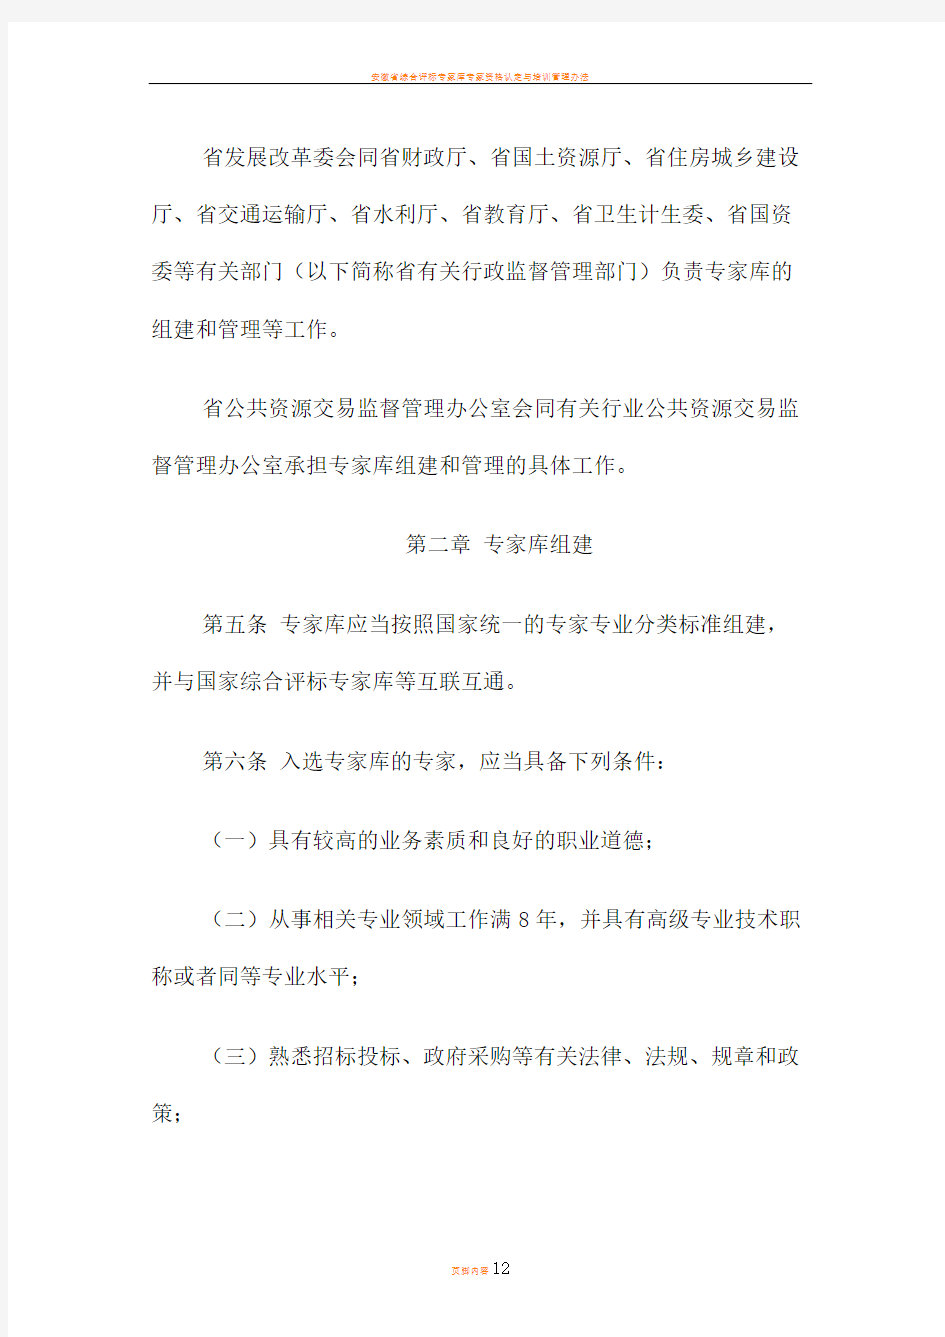 安徽省综合评标评审专家库管理办法(皖政办【2016】56号)